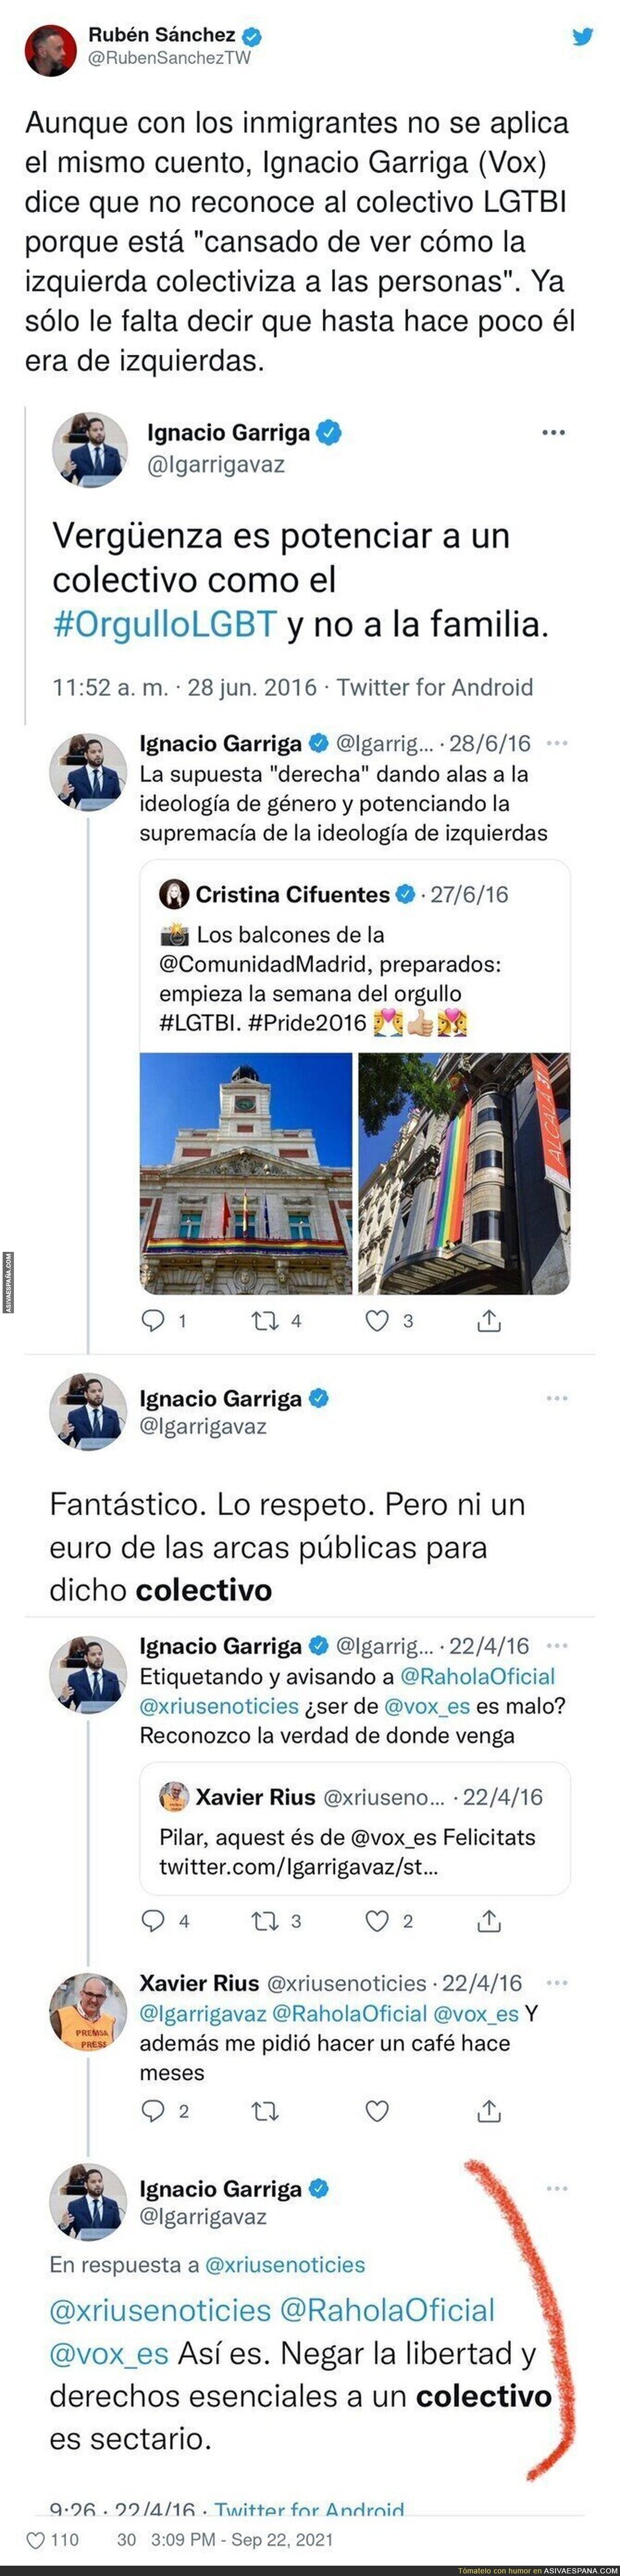 La persecución de Ignacio Garriga al colectivo LGTBI